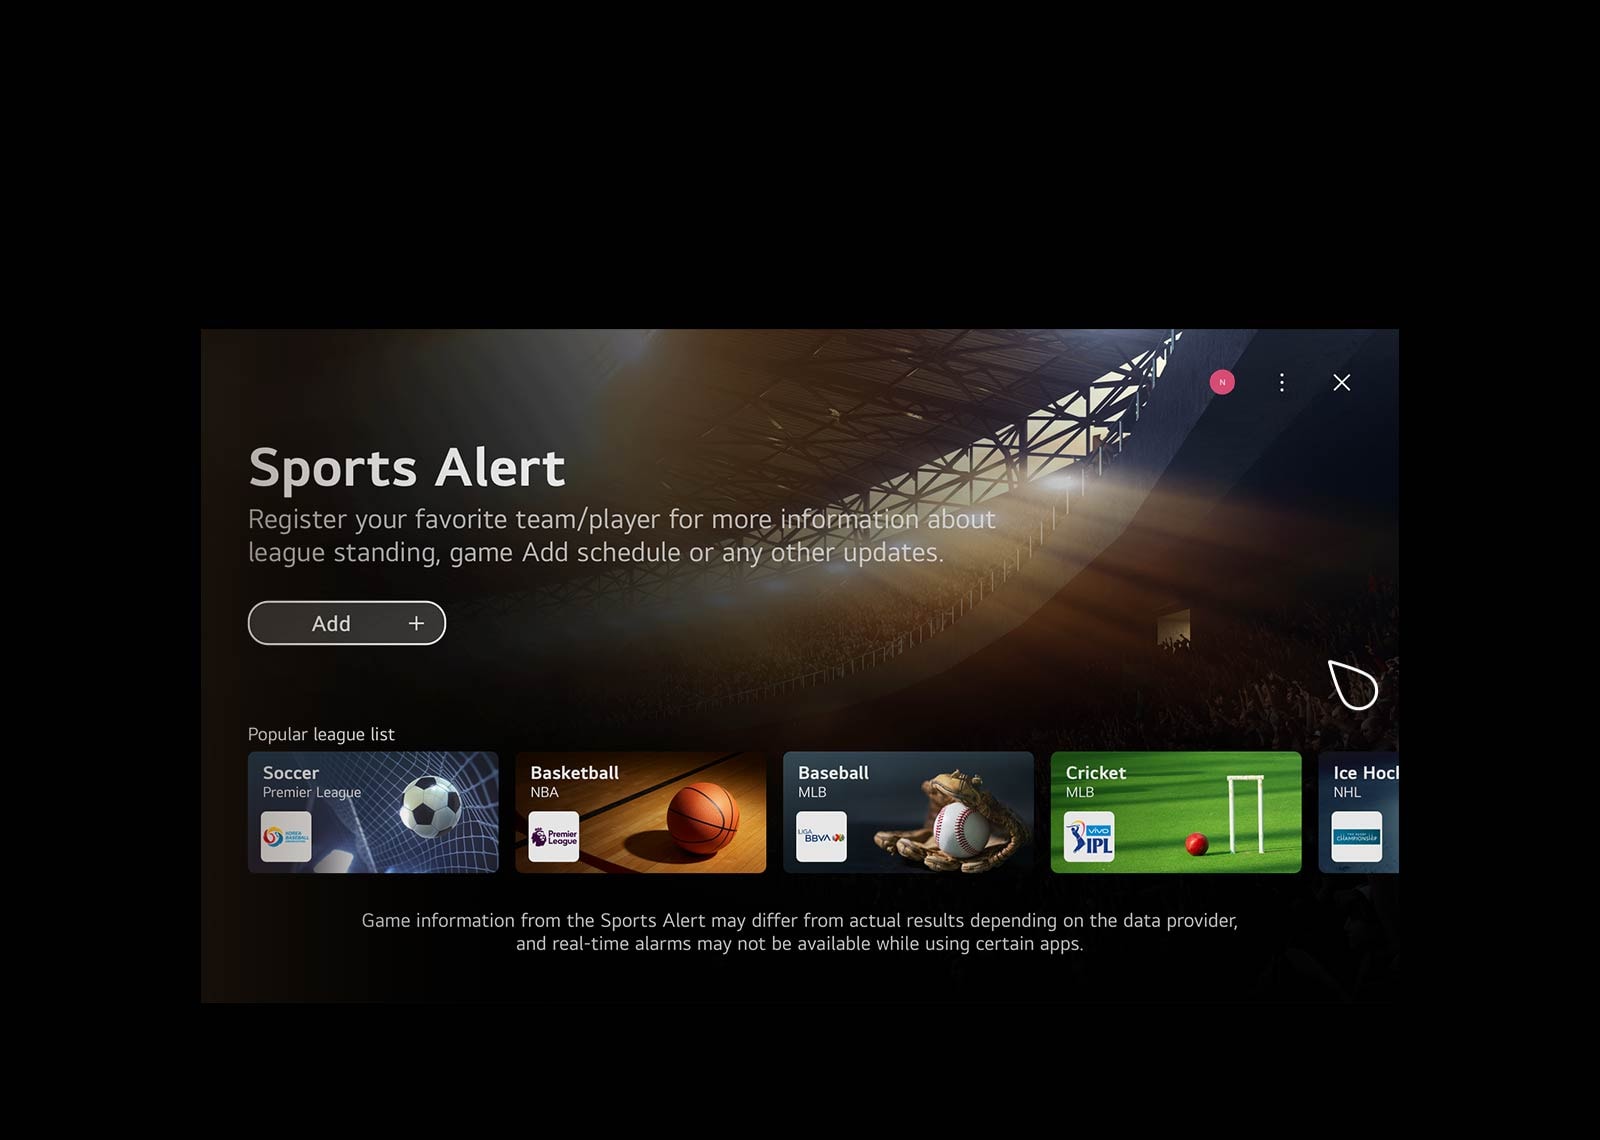 Video-prikaz početnog ekrana WebOS. Pokazivač klikće na Brzu karticu za igre i zatim Brzu karticu za sport, i u oba slučaja se prelazi na ekrane sa povezanim sadržajem.